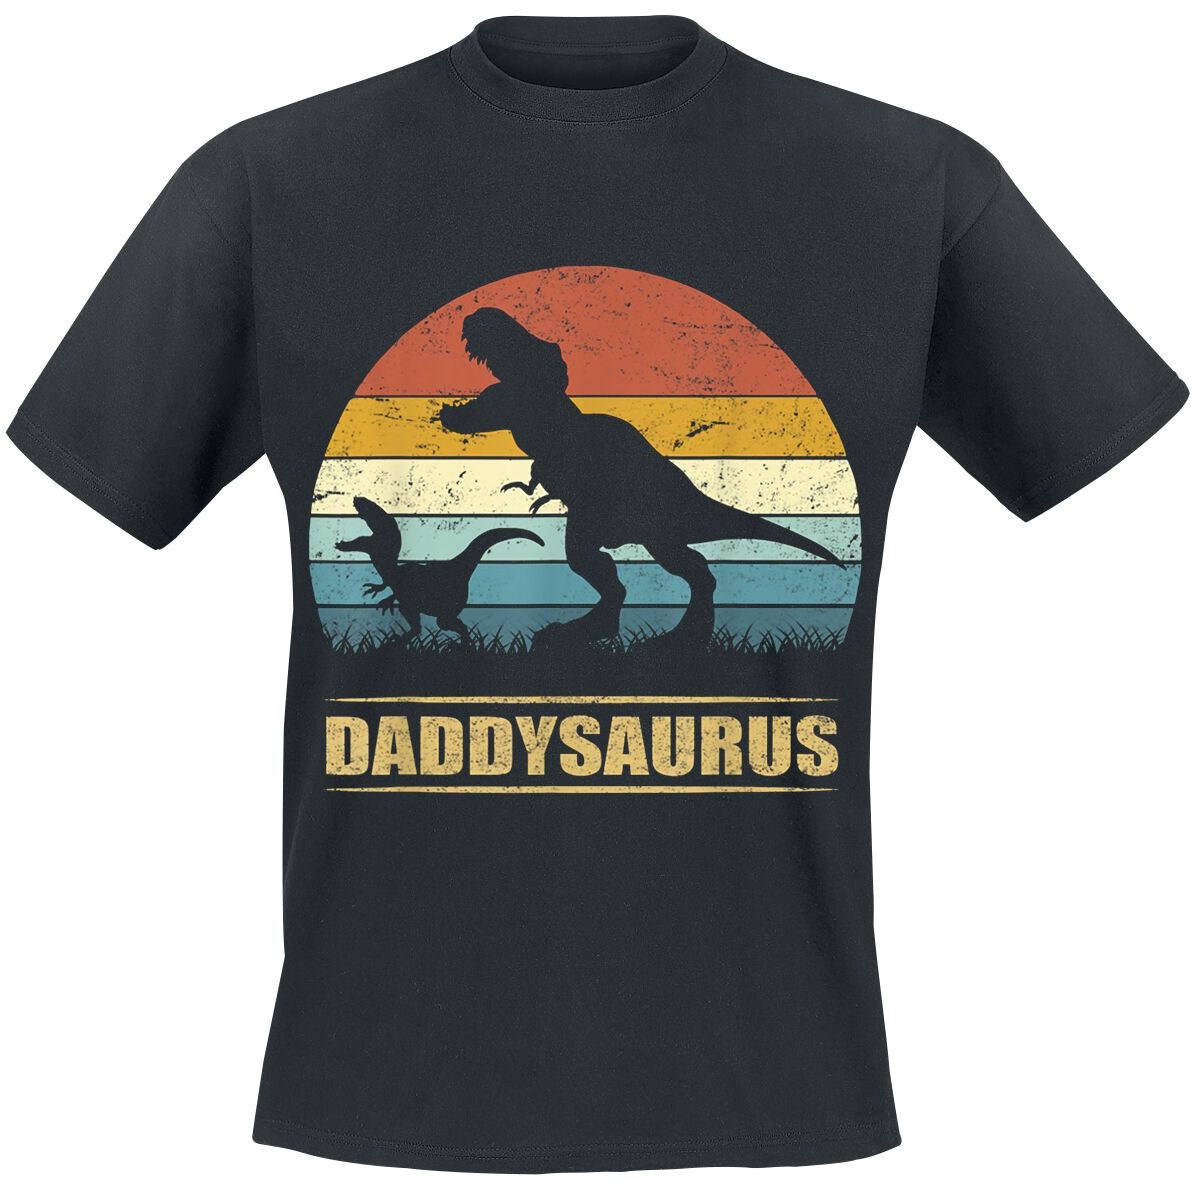 Familie & Freunde Daddysaurus 3 T-Shirt schwarz in 4XL